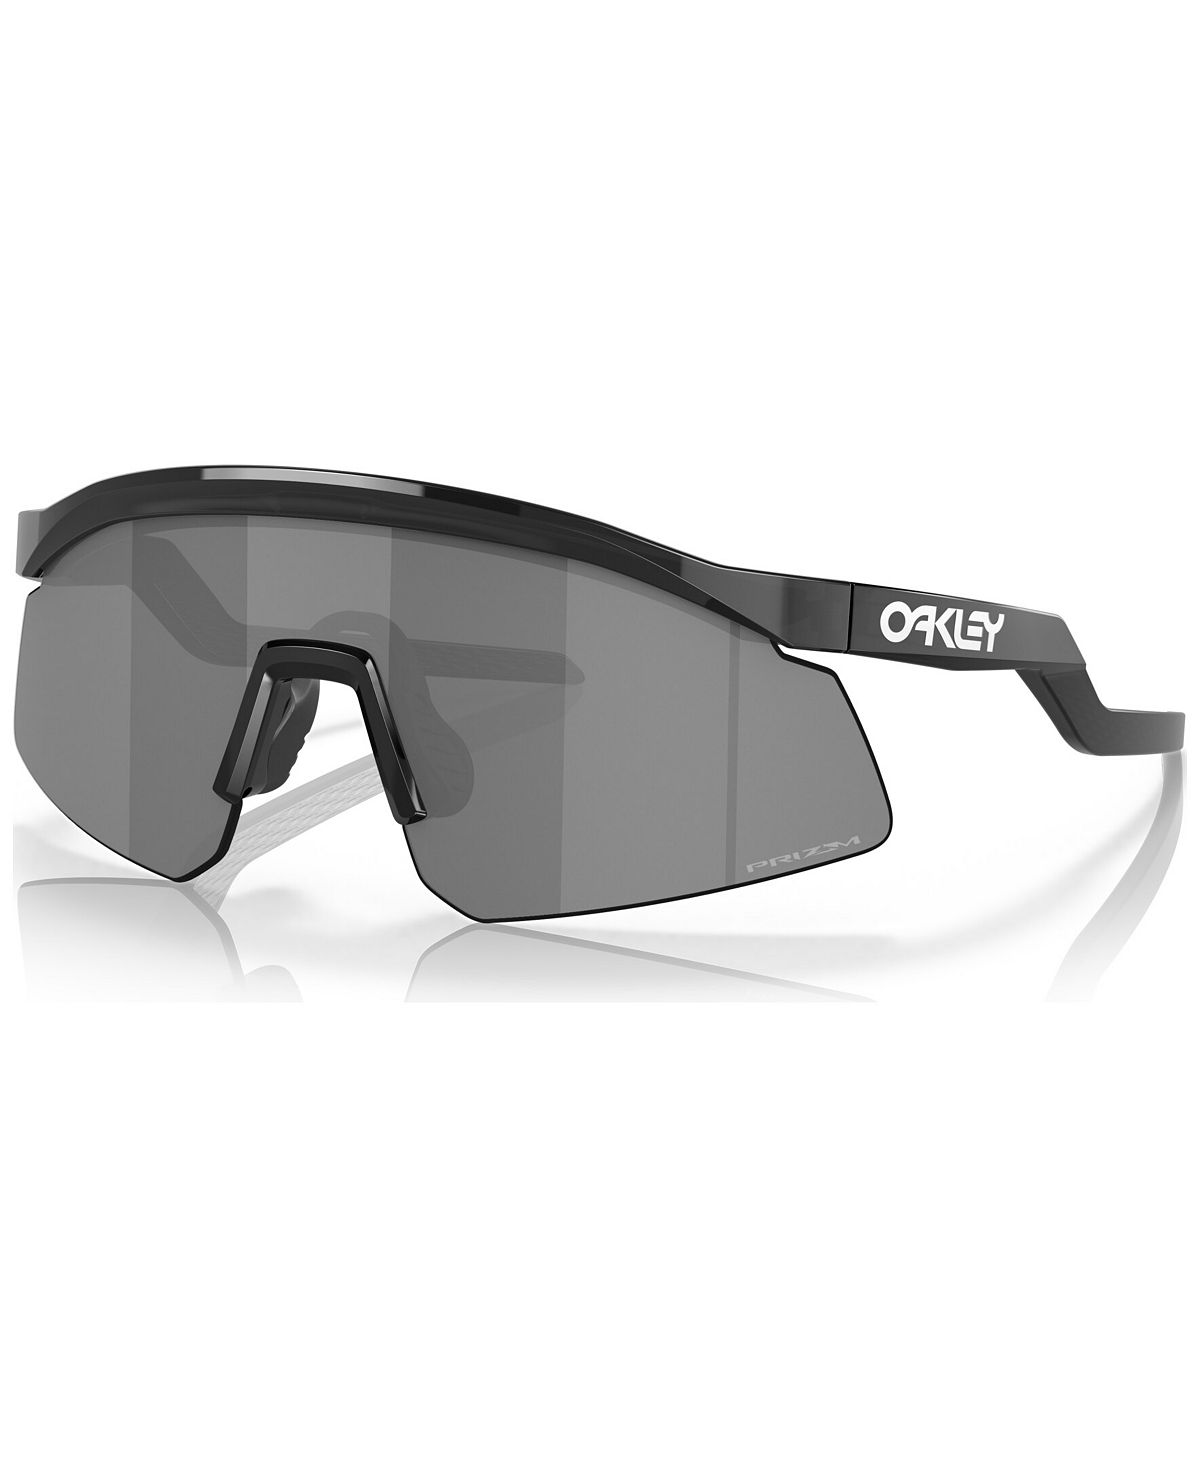 Мужские солнцезащитные очки, OO9229-0137 Oakley